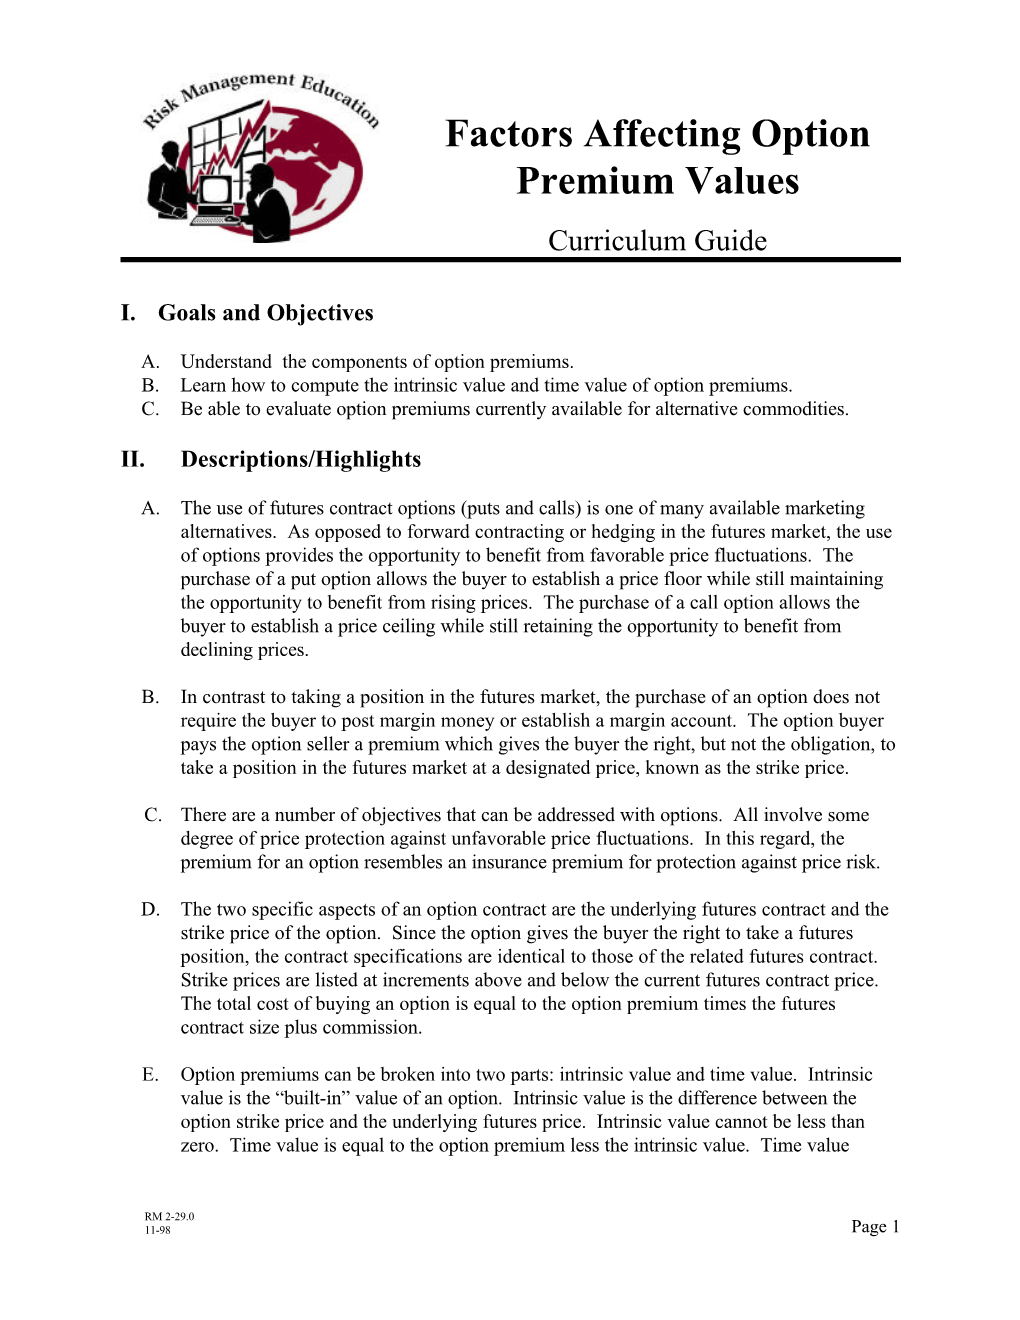 Factors Affecting Option Premium Values Curriculum Guide